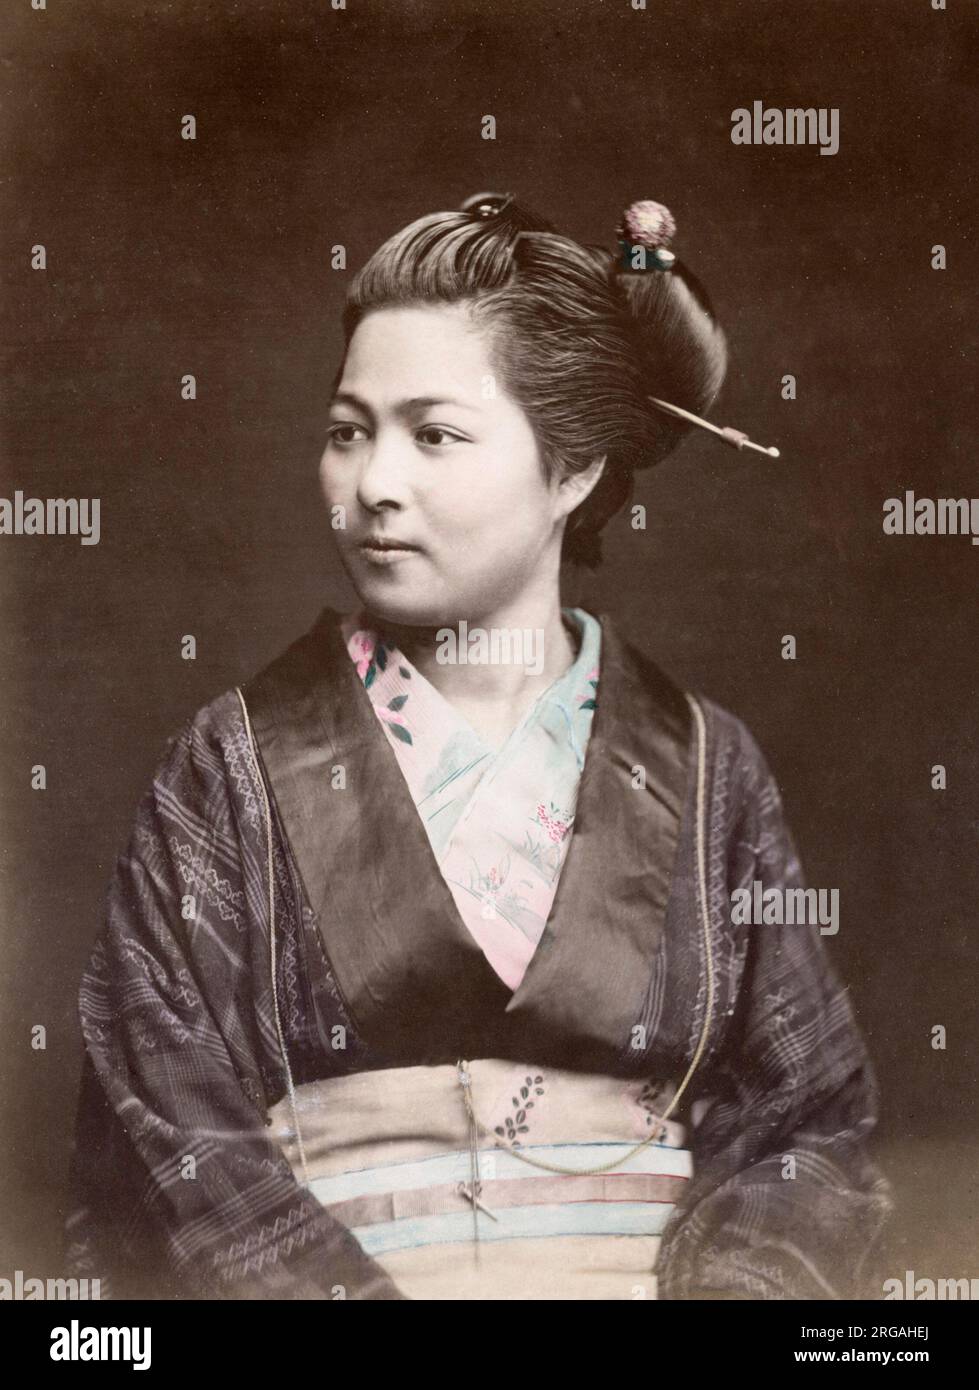 c. 1880s Japan - portrait of a woman Stock Photo